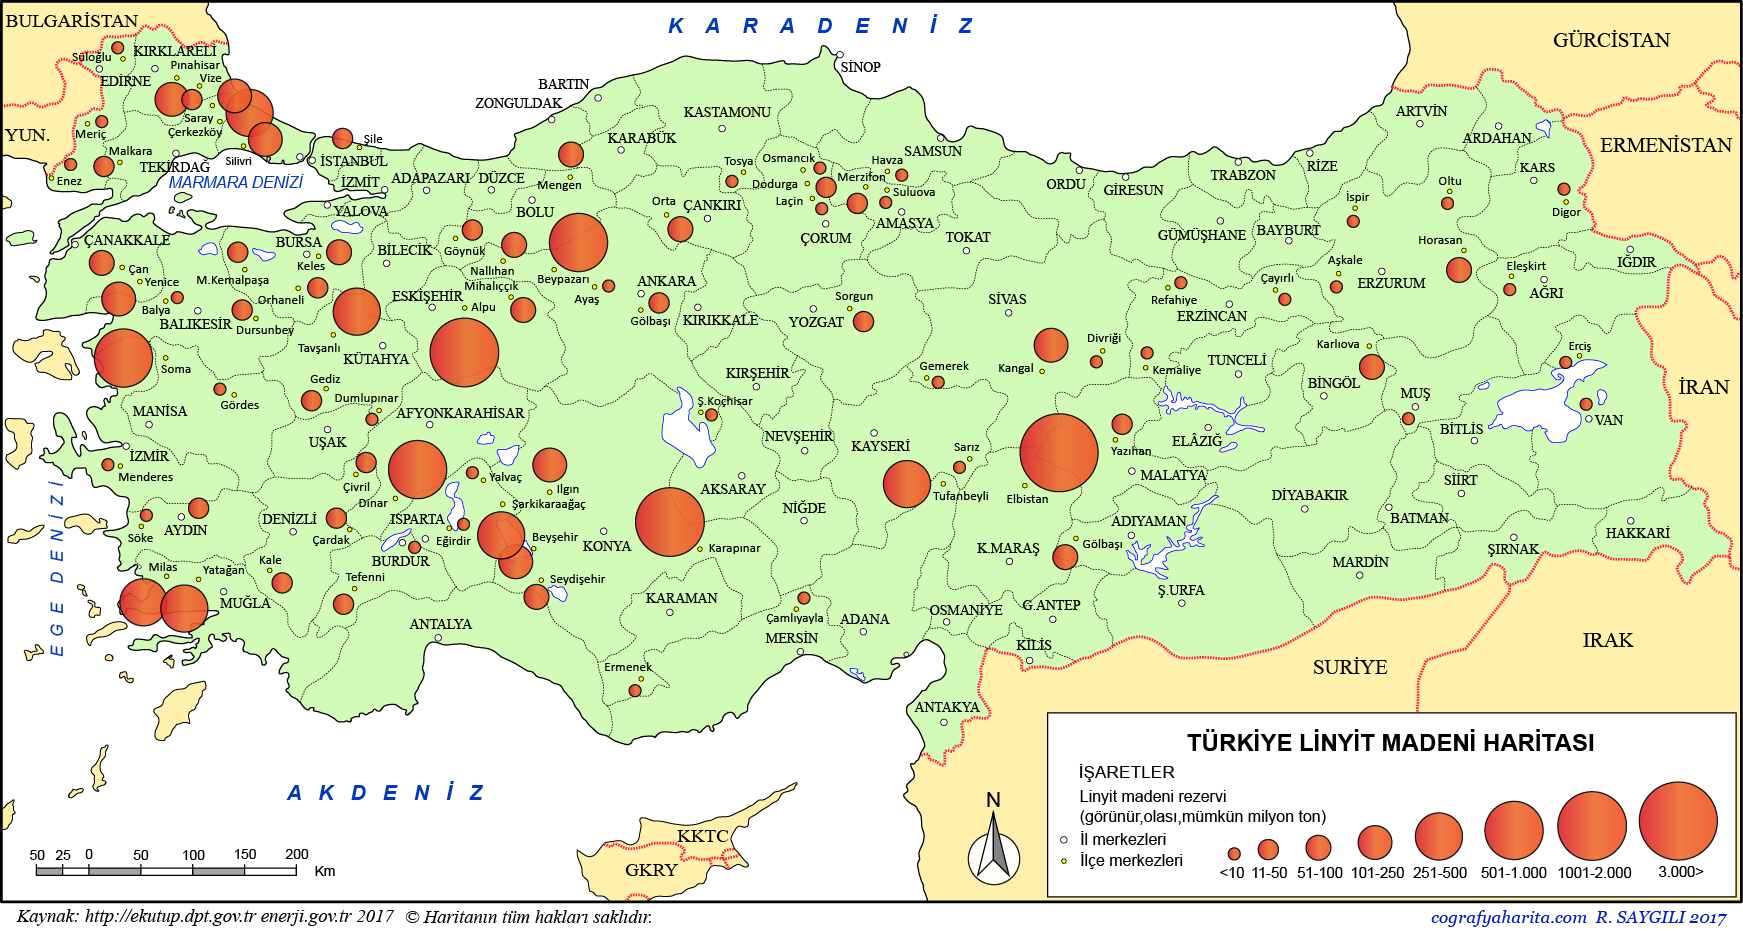 Türkiye Linyit Madeni Haritası: Linyit Madeni Nerede, Hangi İllerde